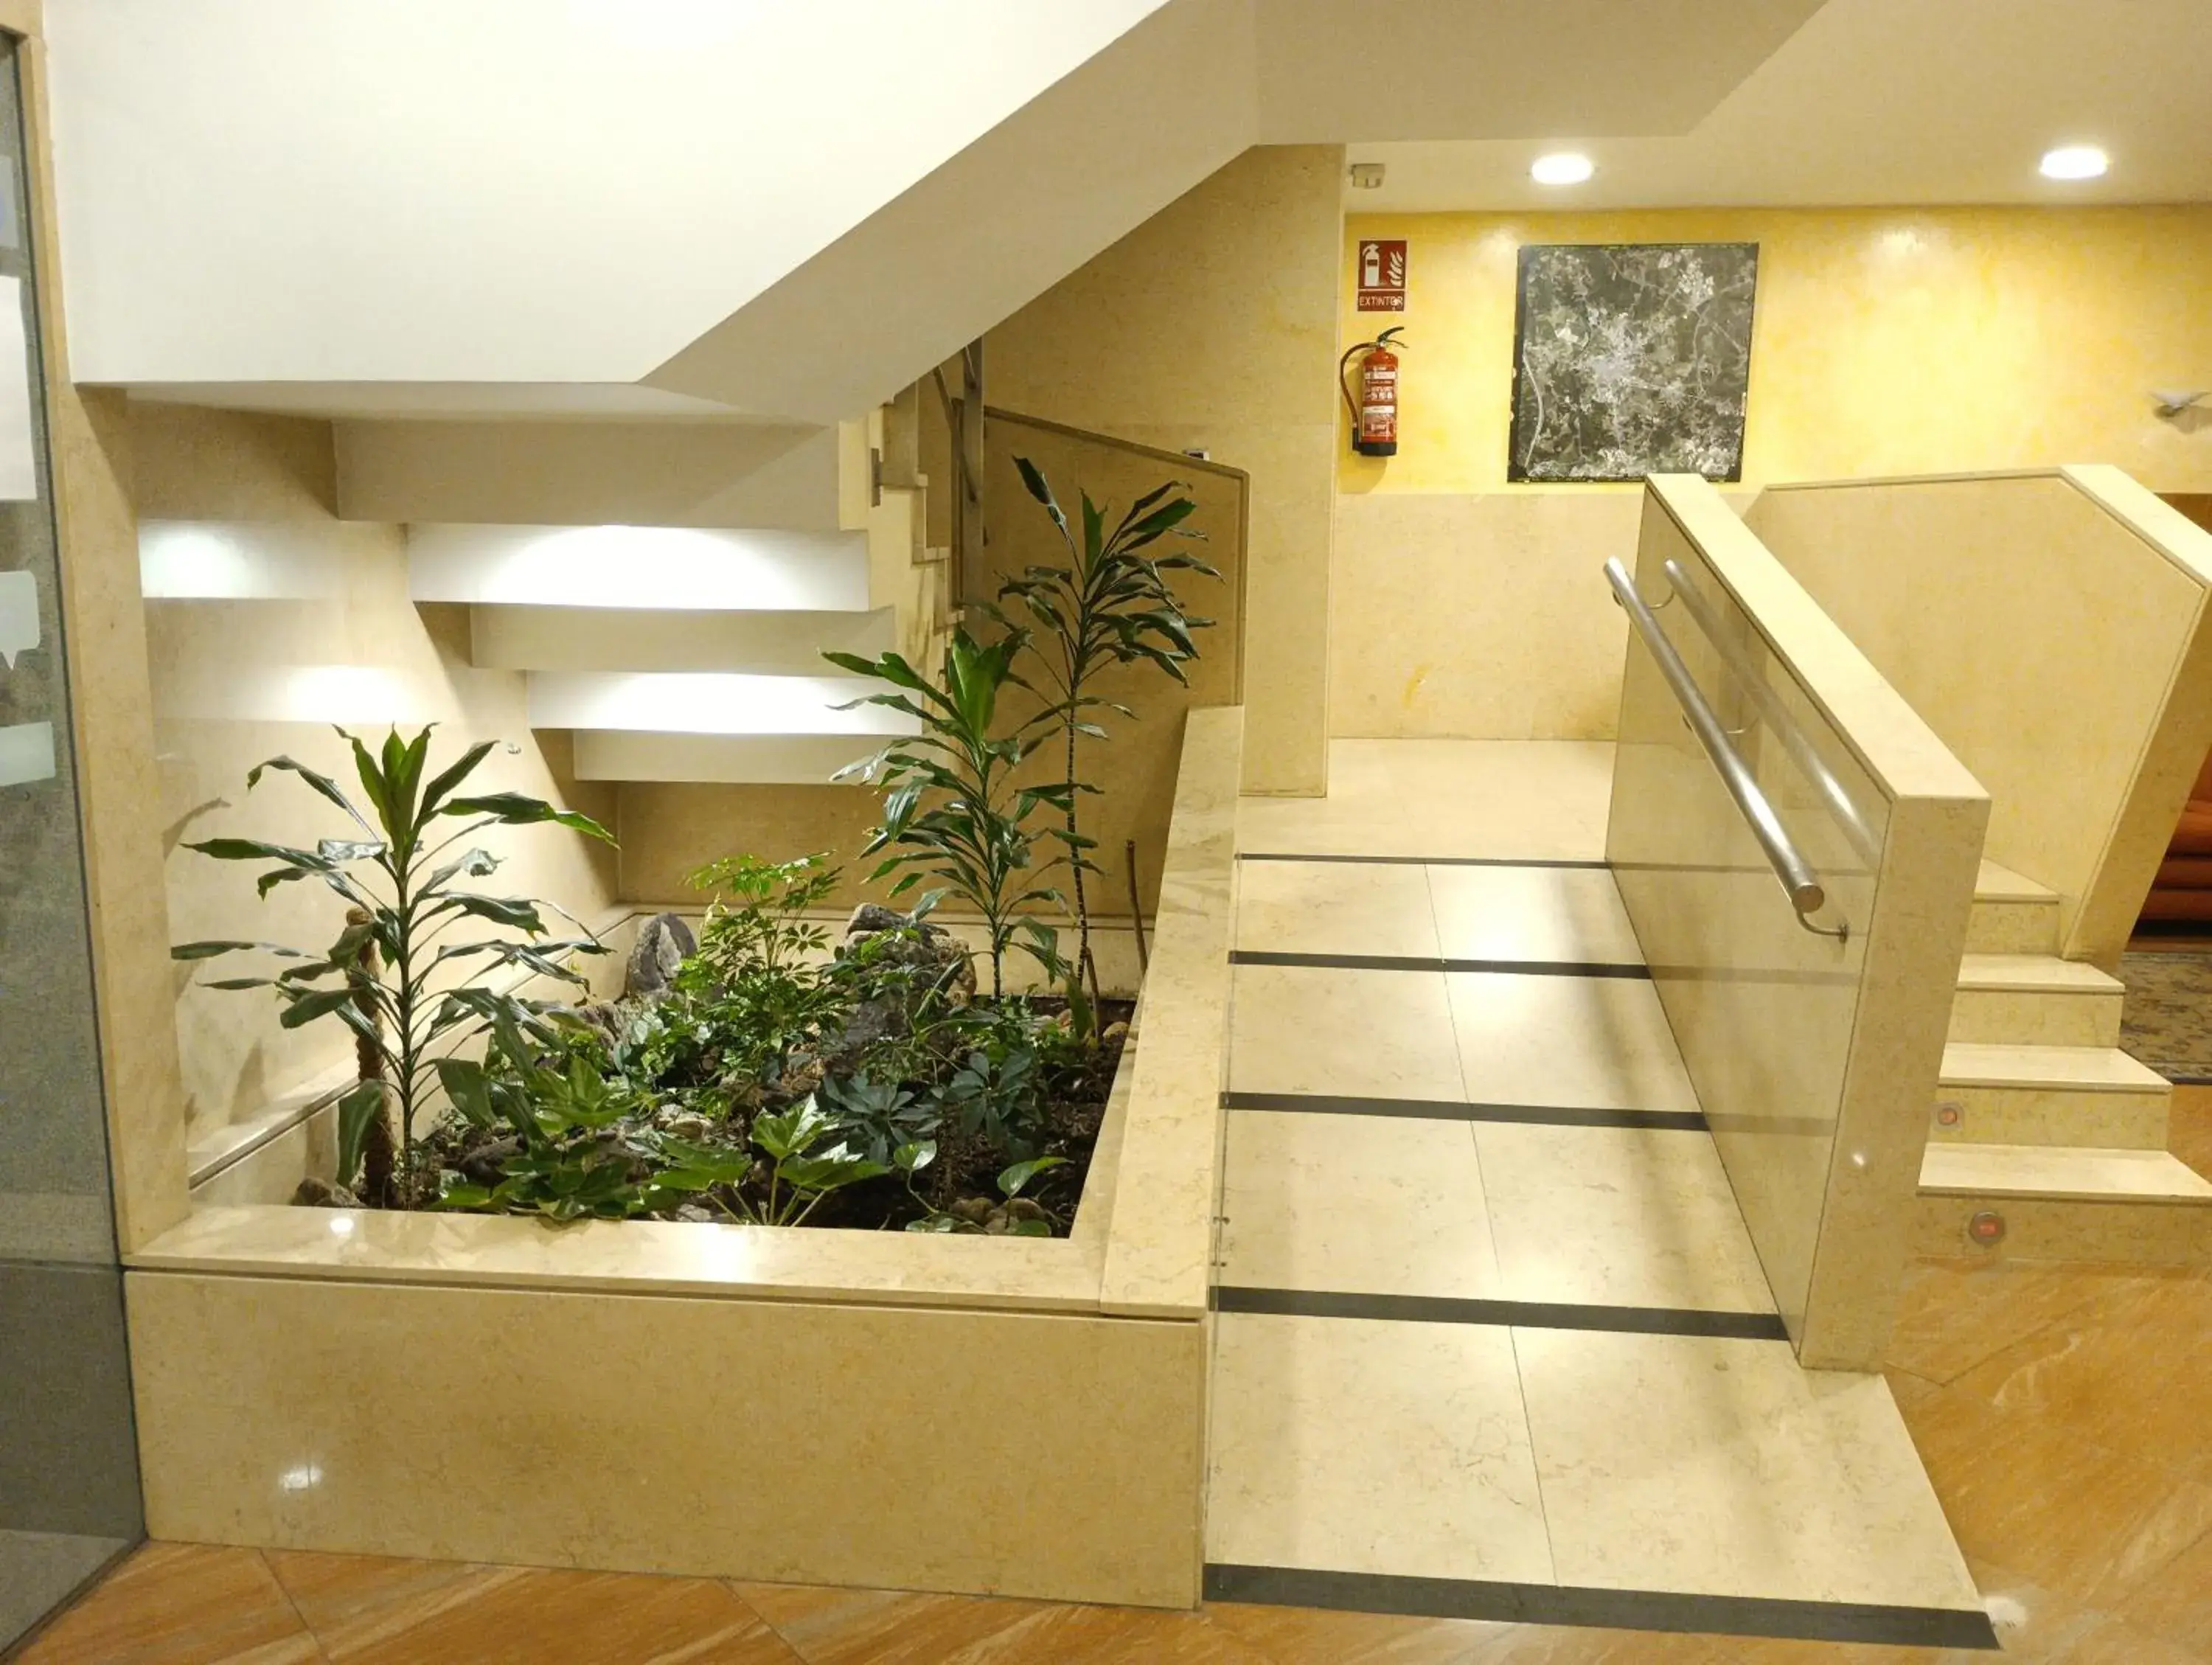 Lobby or reception in Hotel Vila do Alba